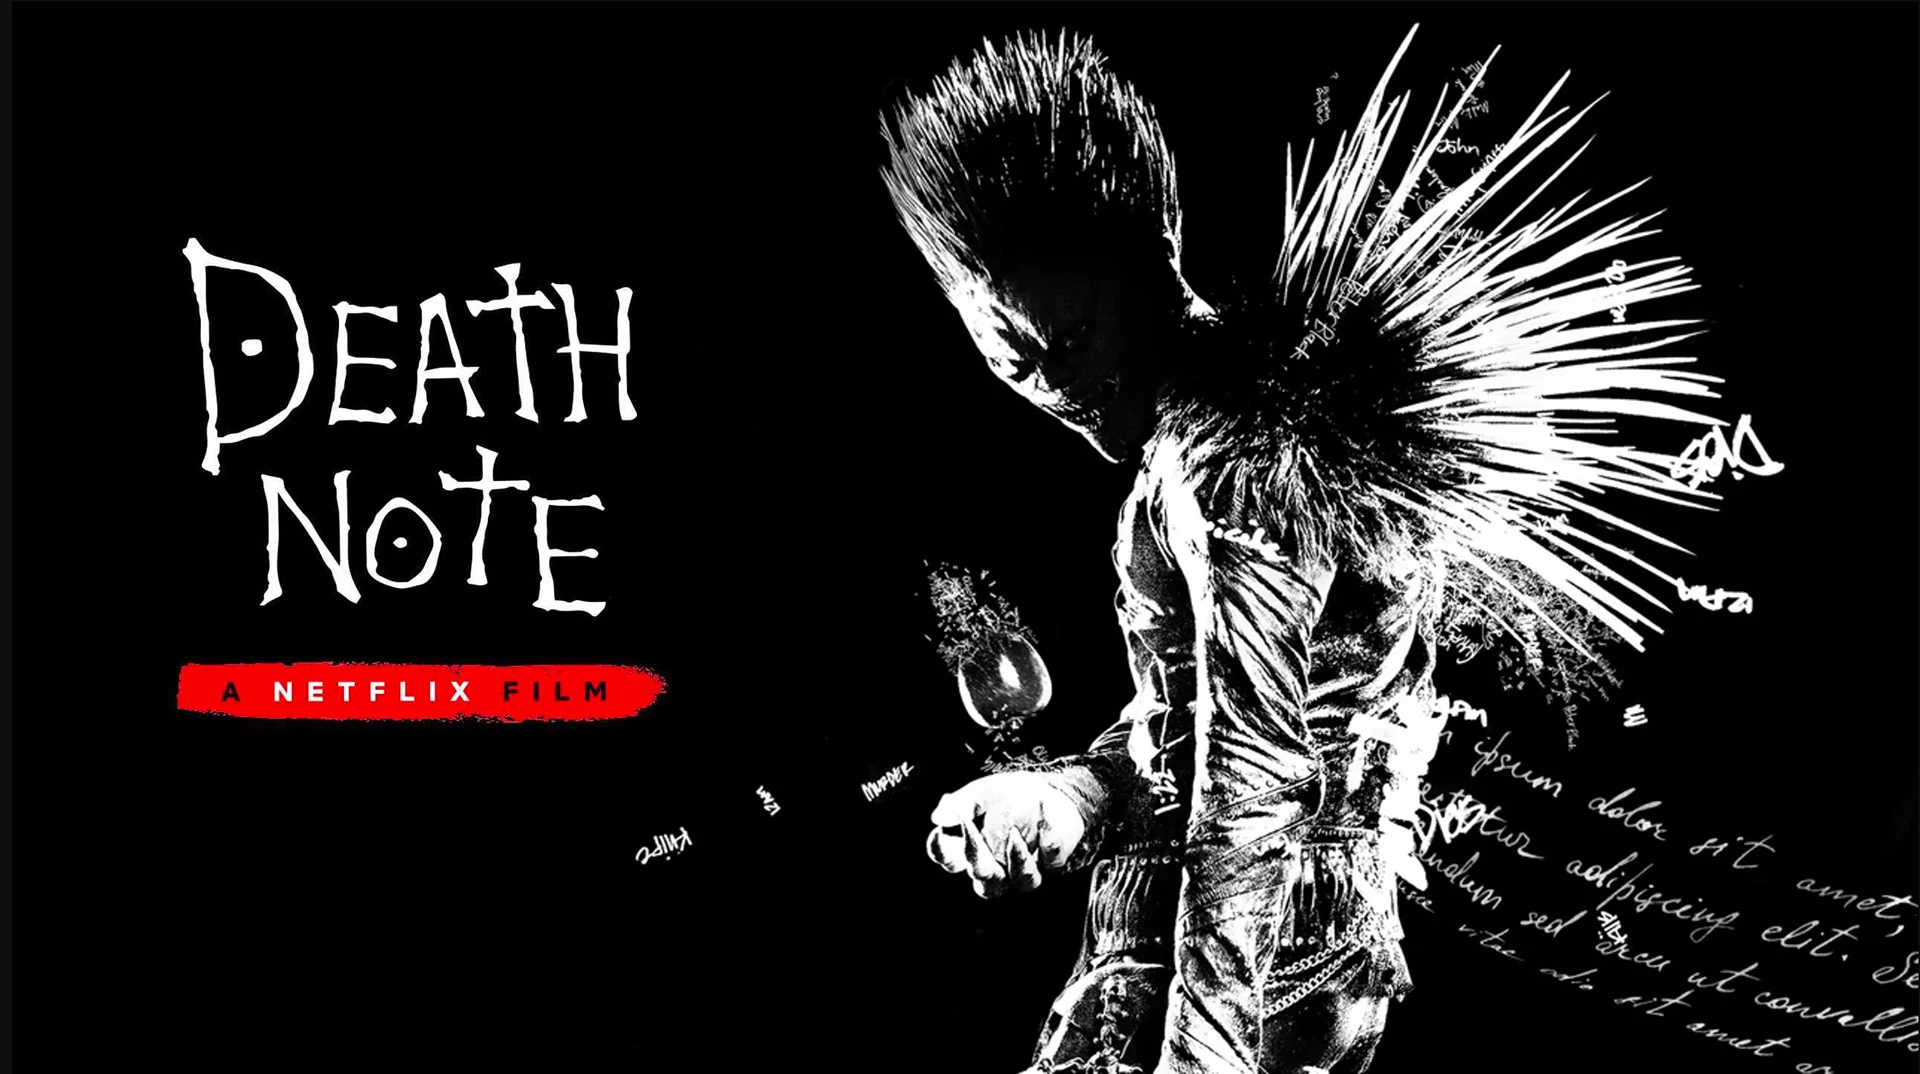 Conheça elenco e confira detalhes sobre o filme de 'Death Note